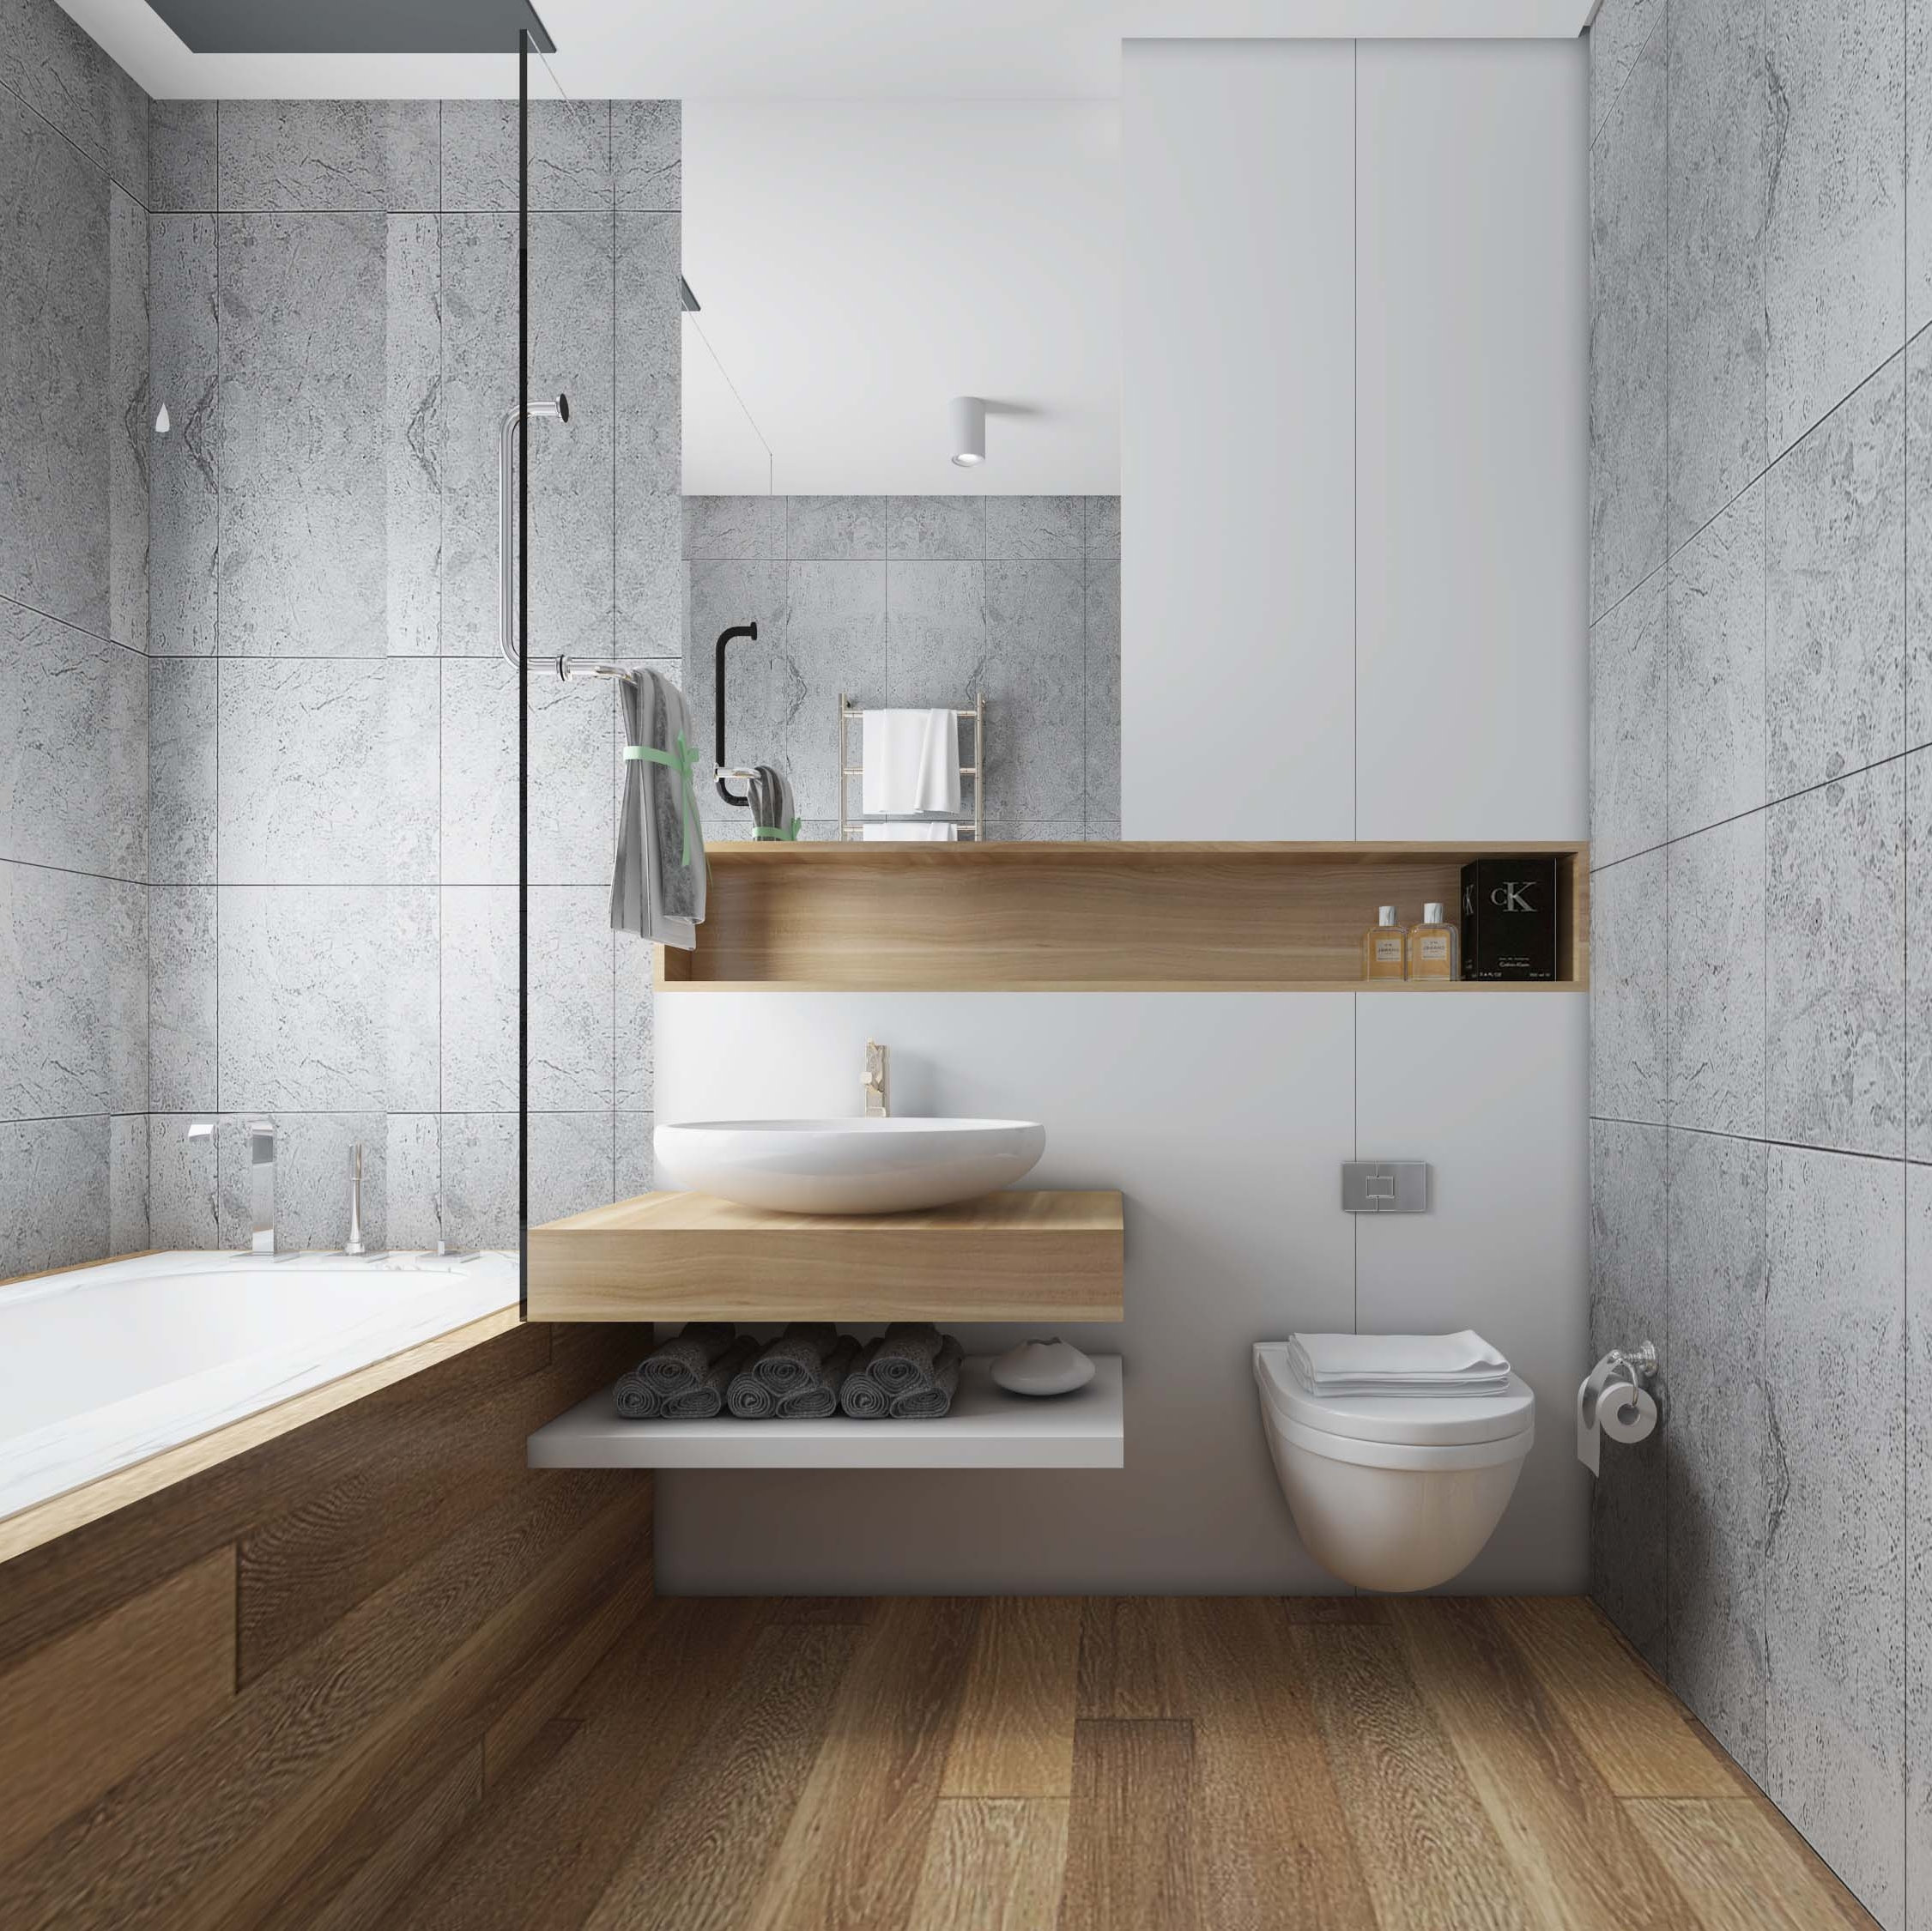 Wood & Marble Design in Bathroom 